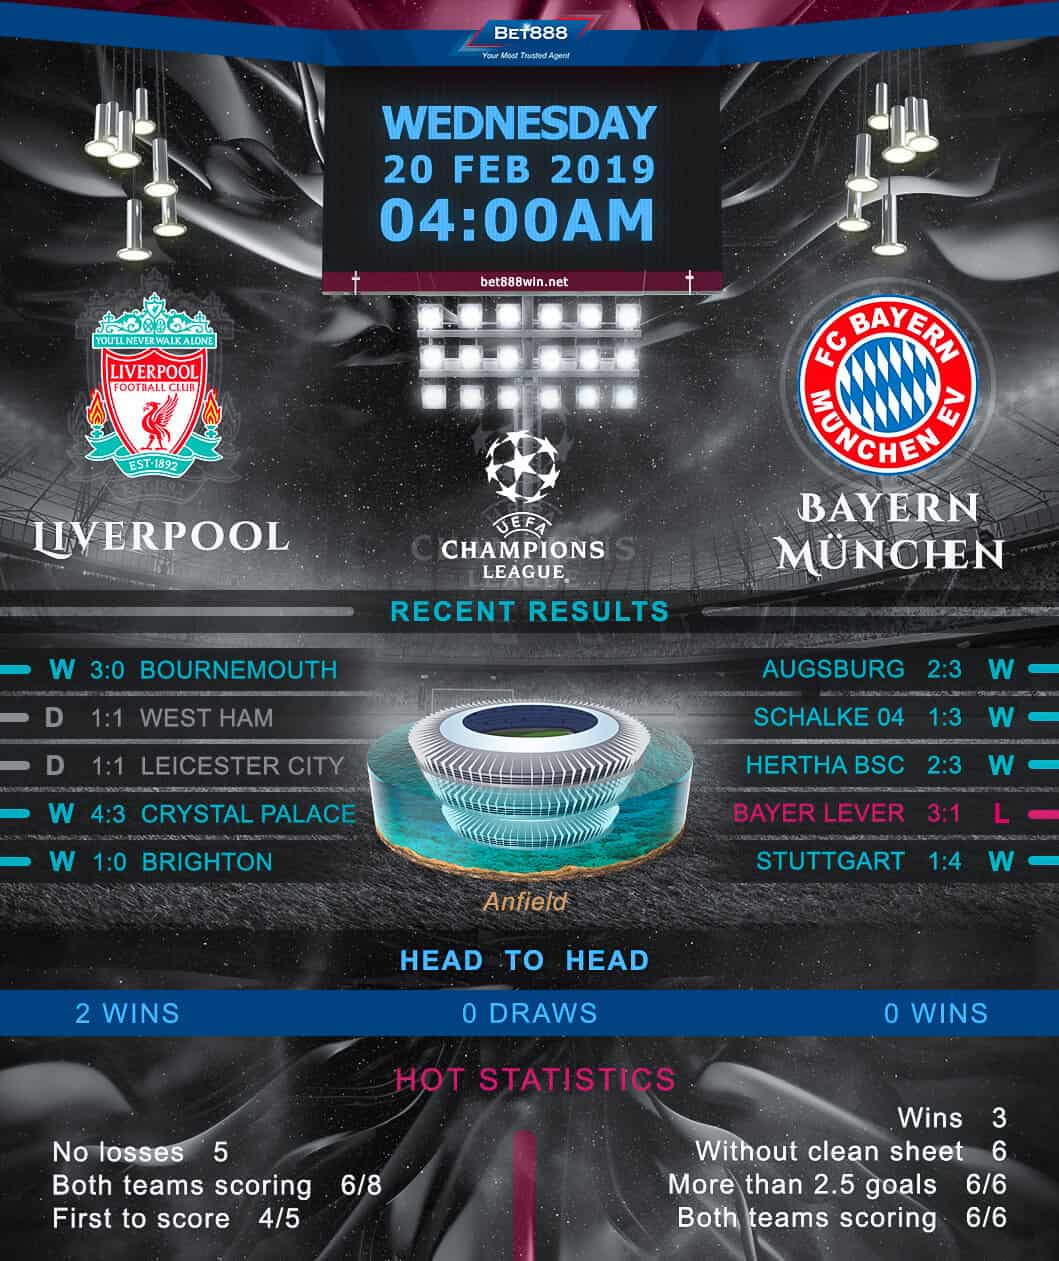 Liverpool vs Bayern Munich 20/02/19